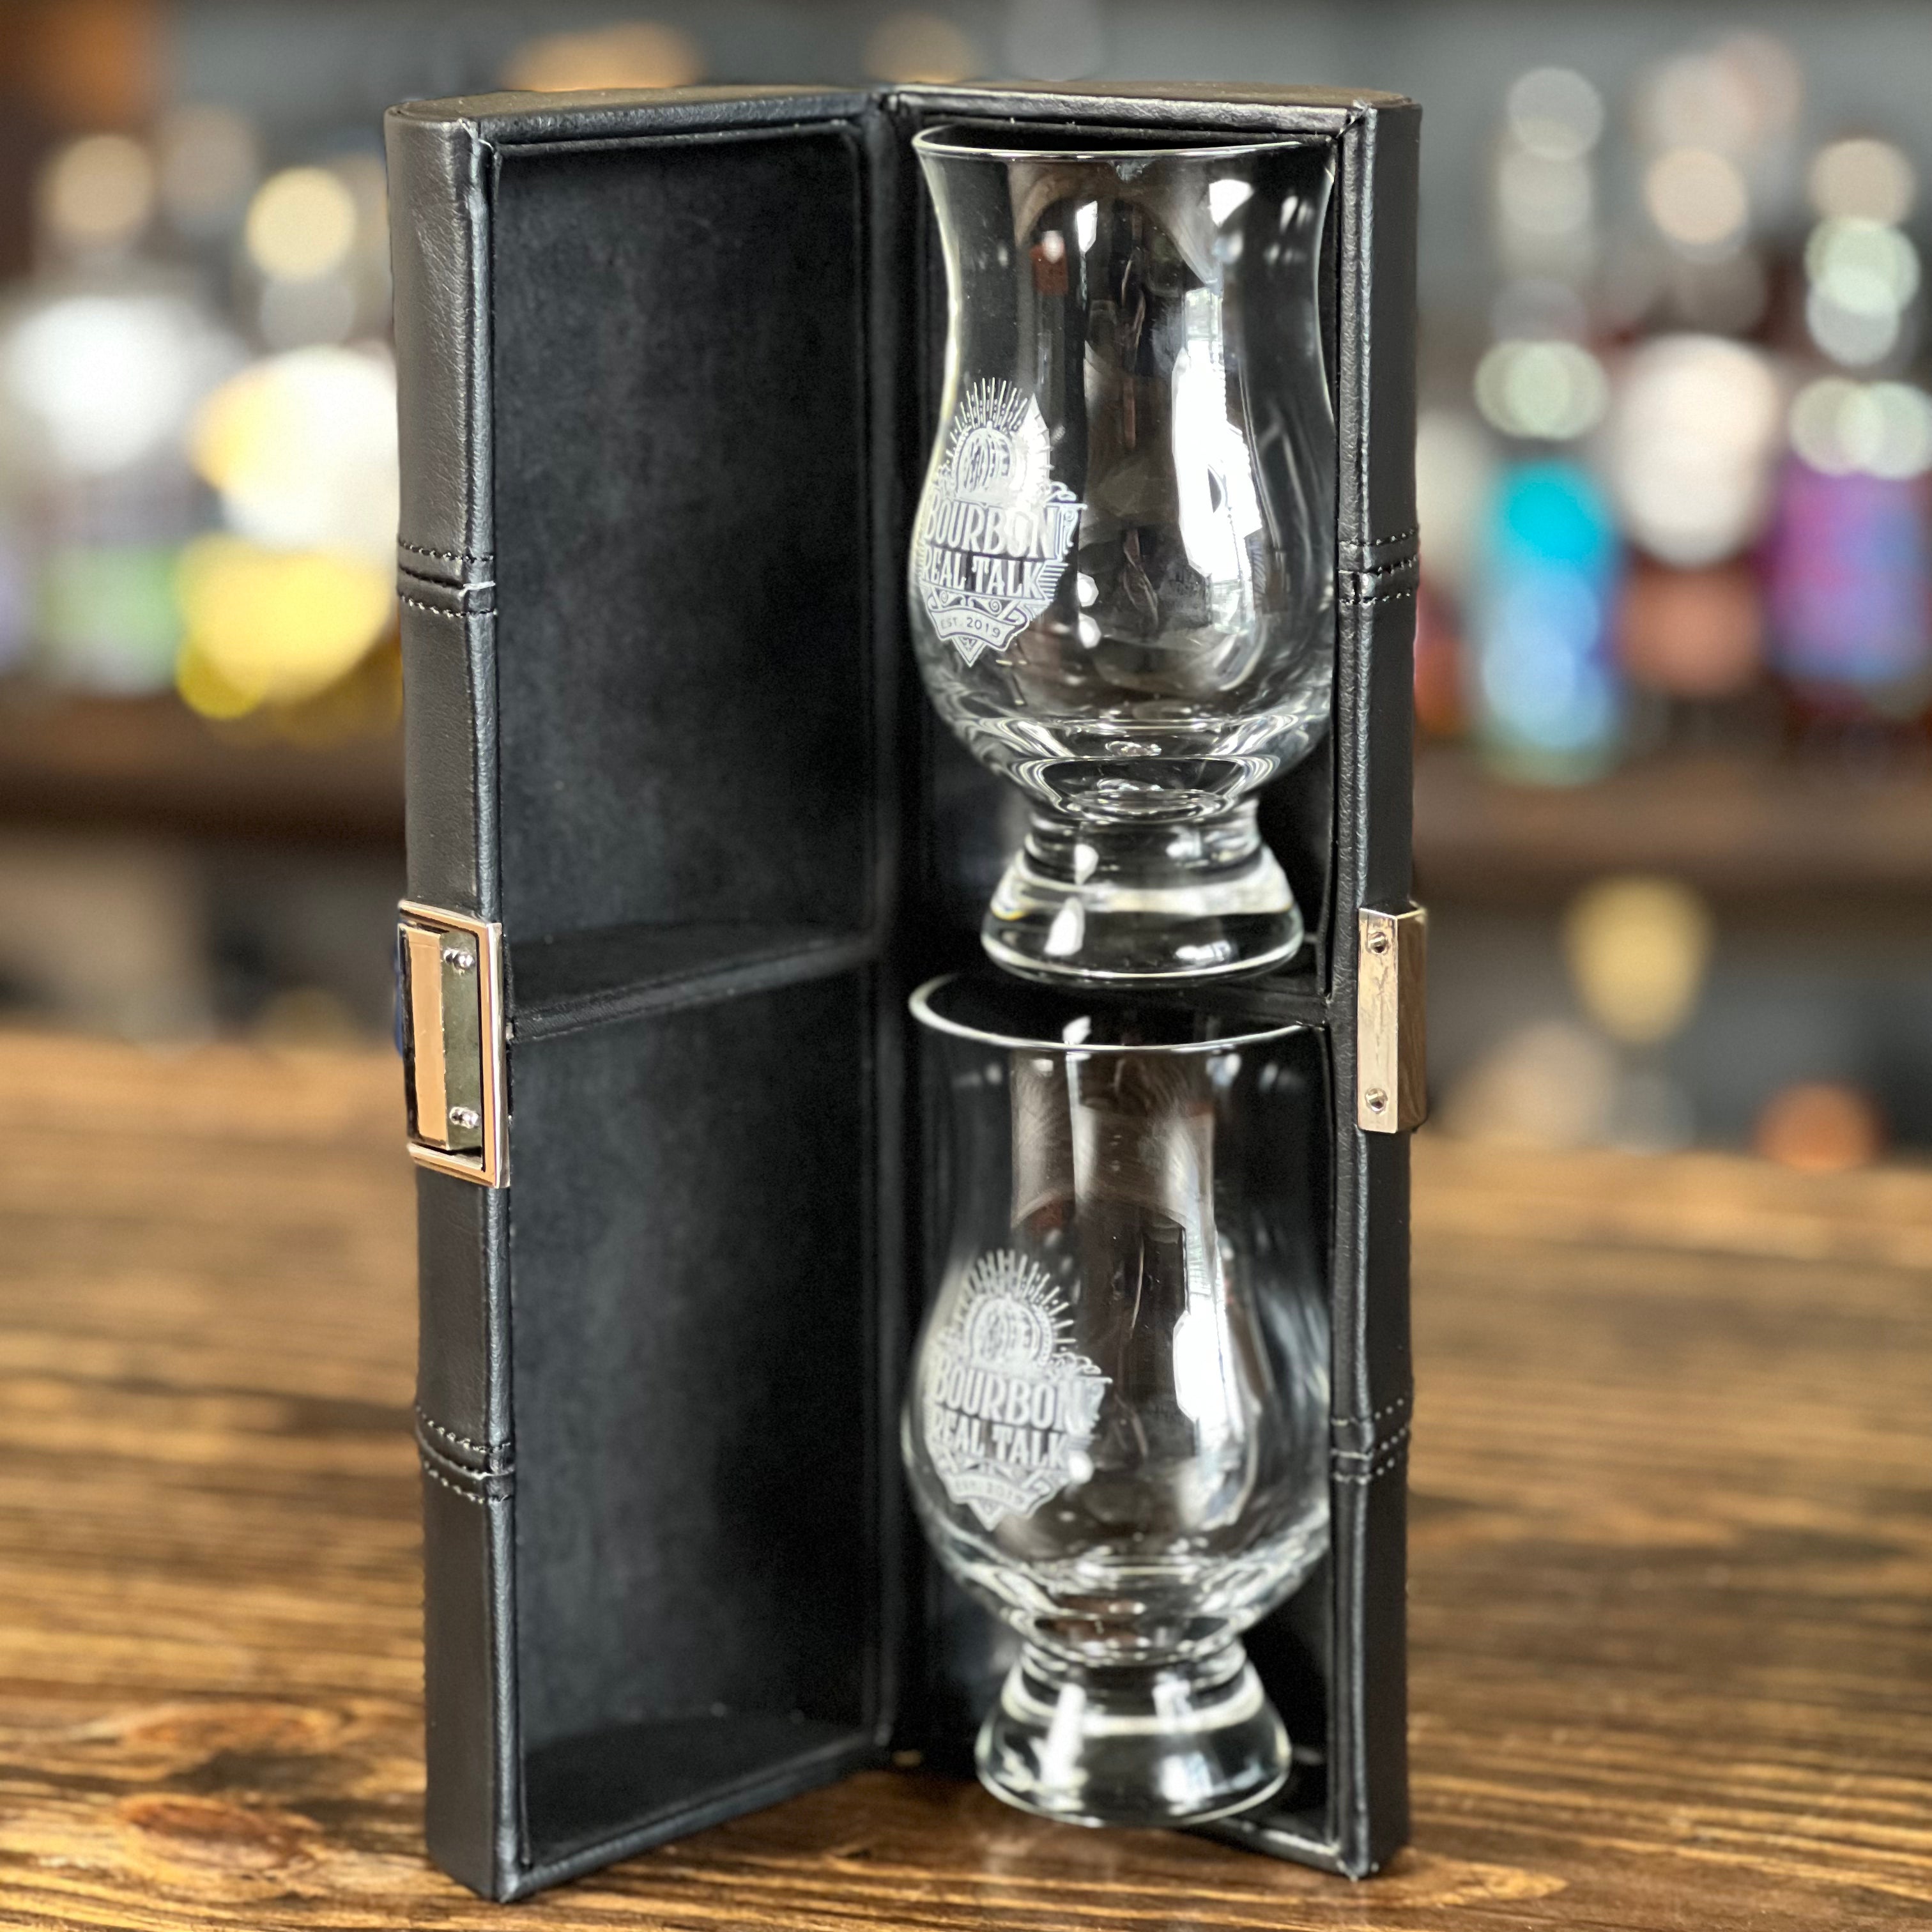 GLENCAIRN Whisky Glass, Set of 2 in Travel Case